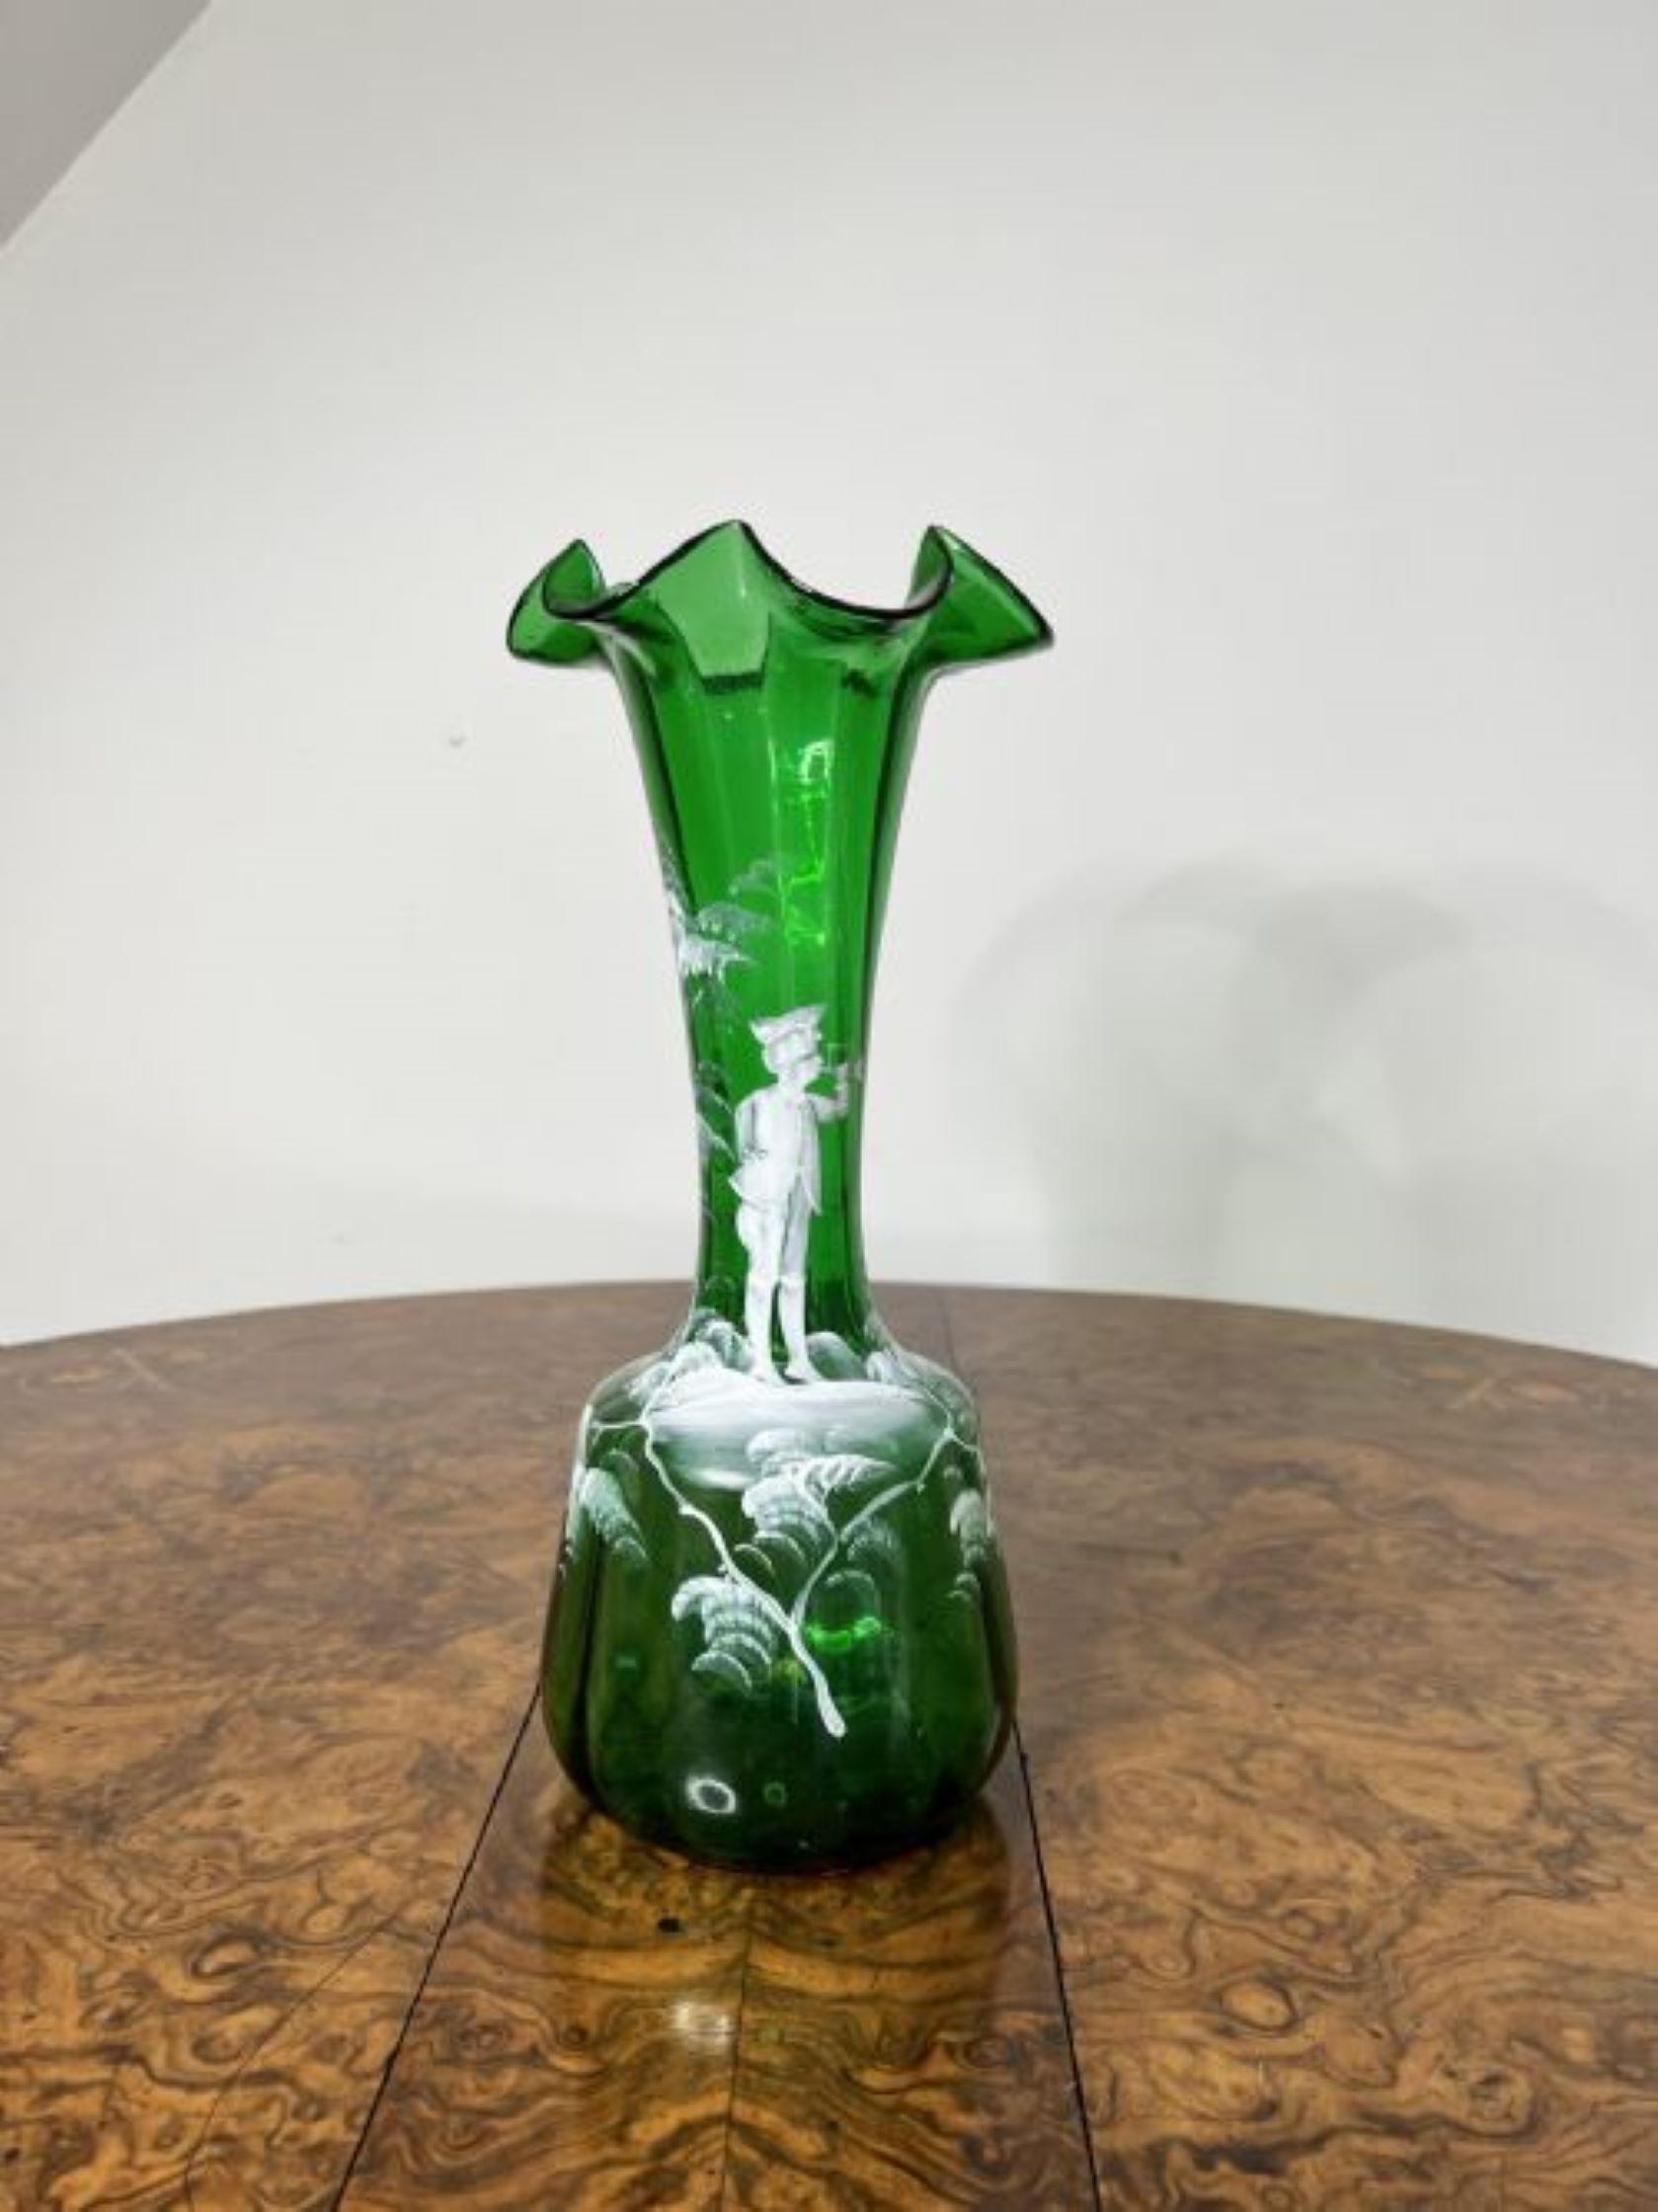 Atemberaubende Qualität Paar antike viktorianische Mary Gregory Vasen mit einer Qualität Paar Mary Gregory grünes Glas Vasen mit Qualität gewellt geformten Tops, mit weißer Emaille Dekoration eines Jungen spielen ein Instrument umgeben von Bäumen